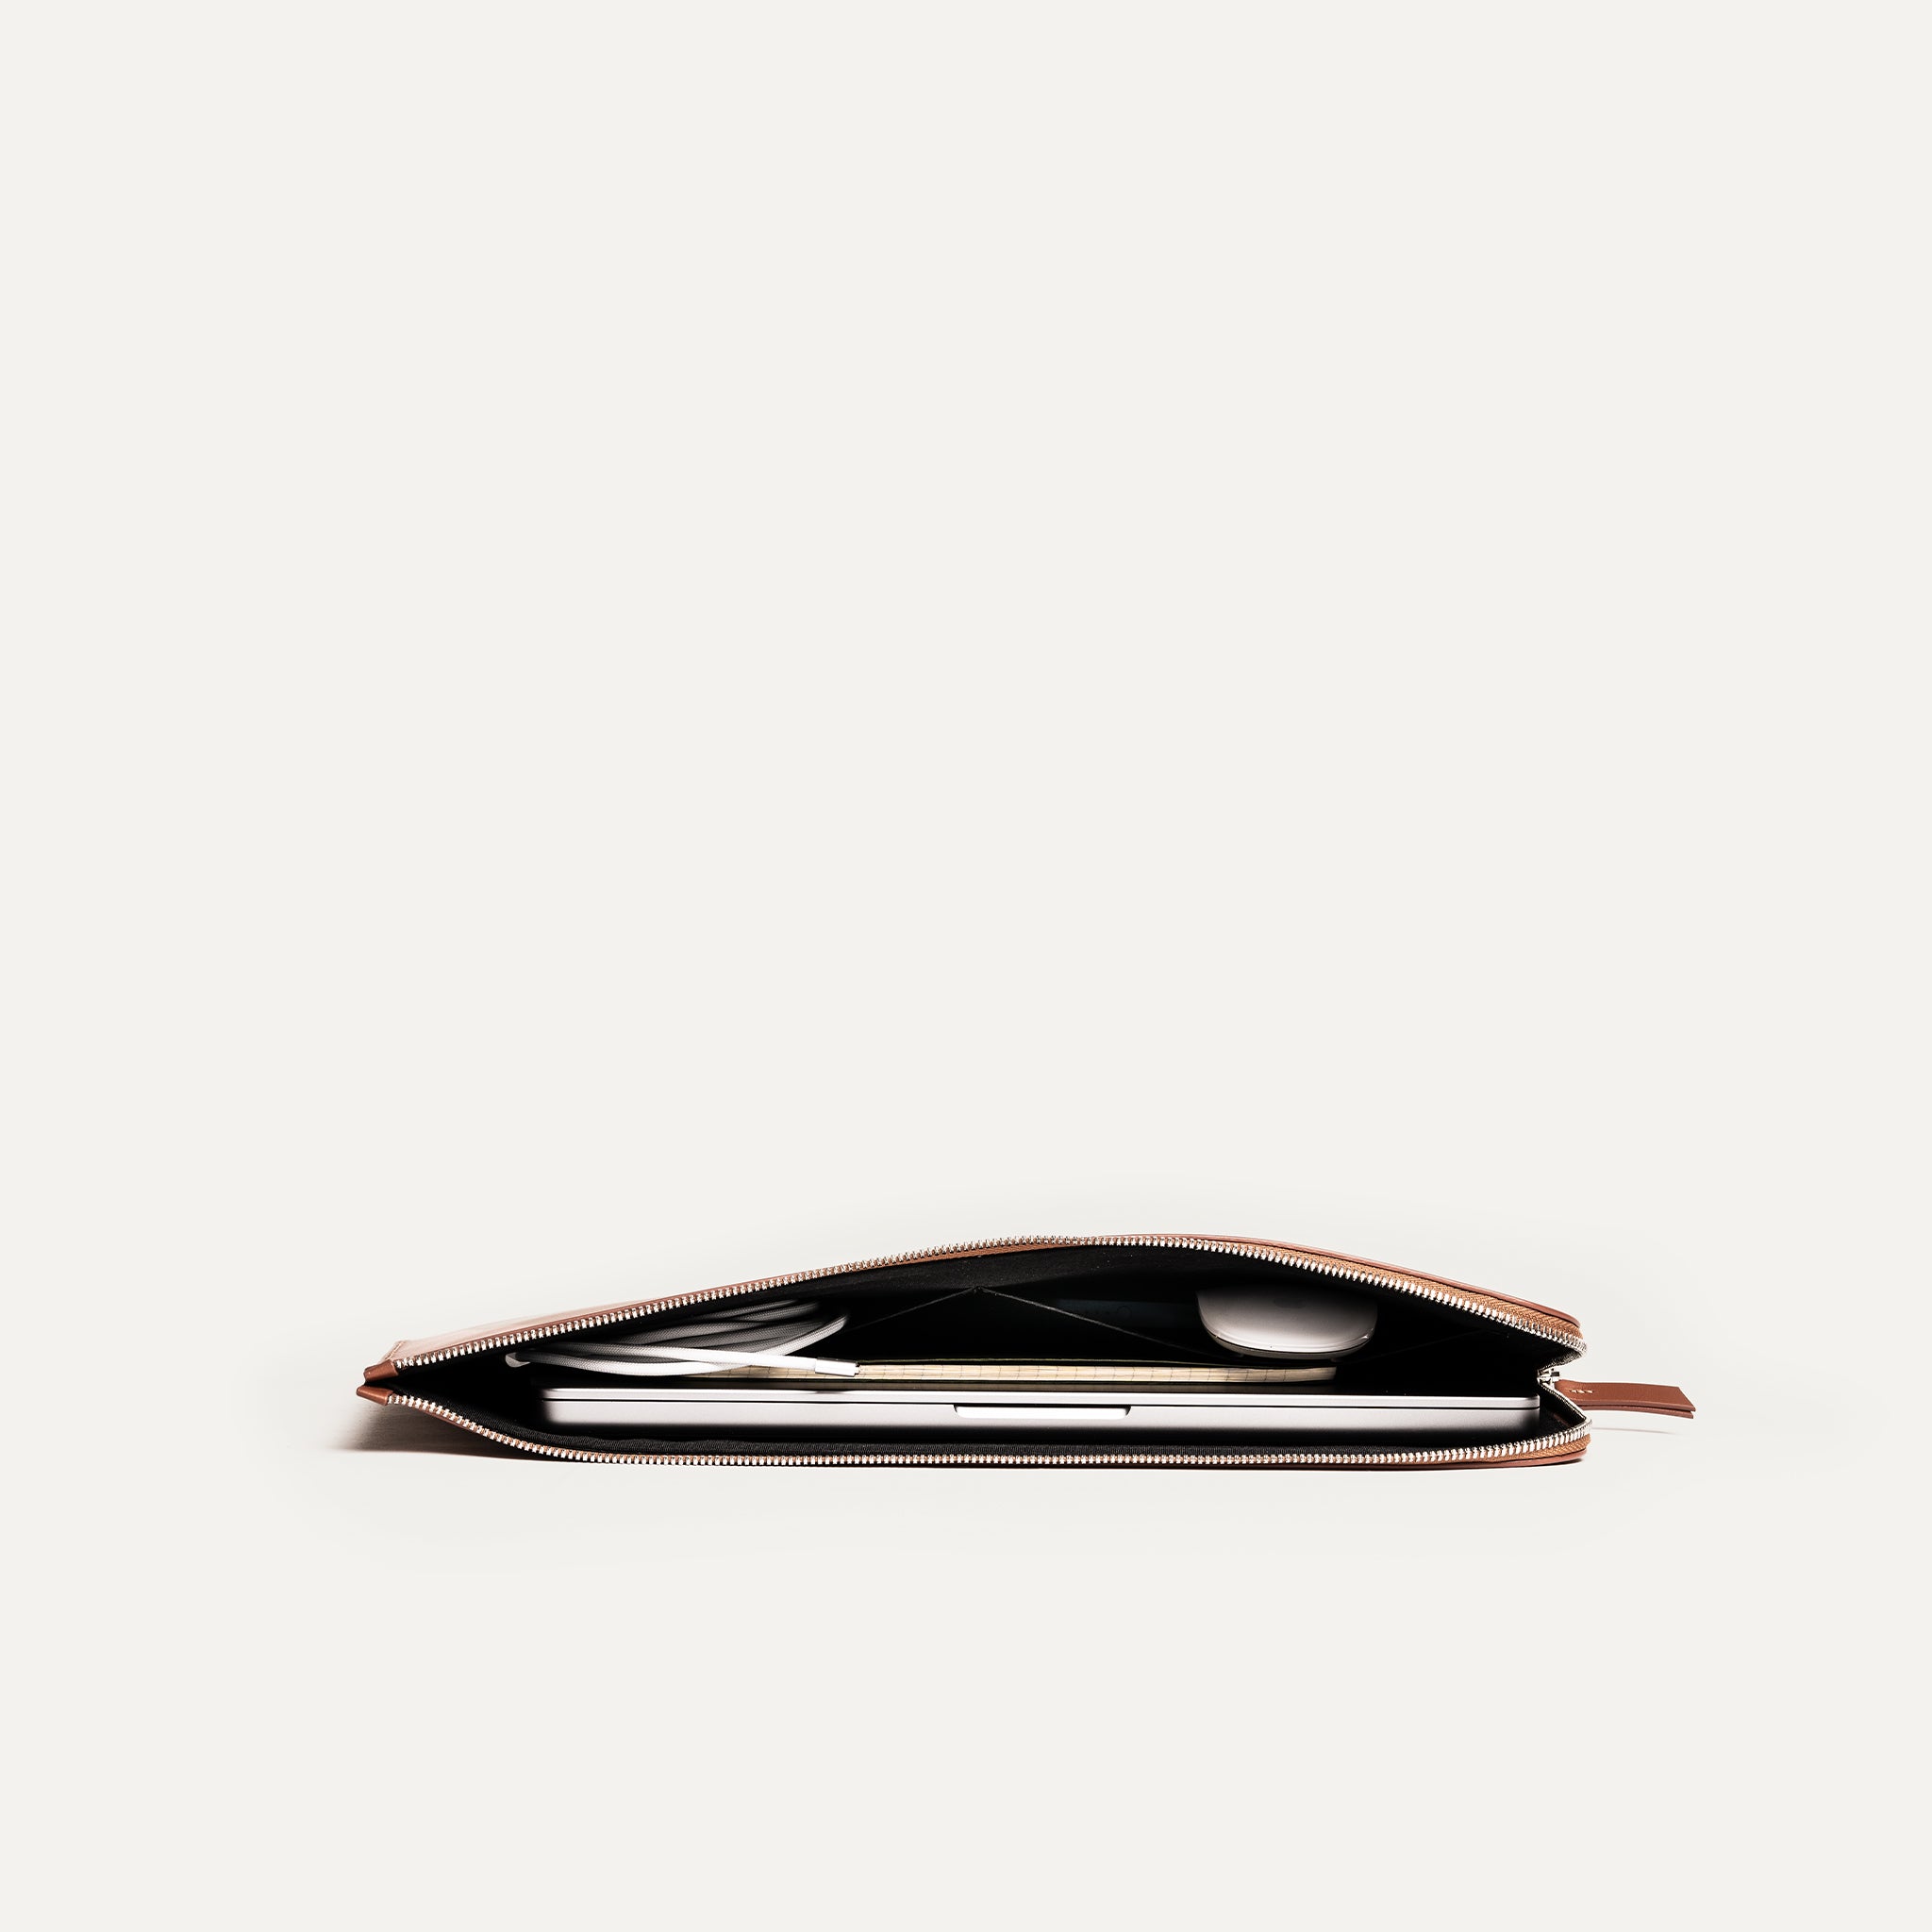 Découvrez la pochette pour ordinateur portable en cuir minimaliste, parfaite pour les professionnels modernes. Fabriquée en cuir marron de haute qualité, elle offre une protection durable. Son design épuré et élégant s'adapte à tous les styles. 